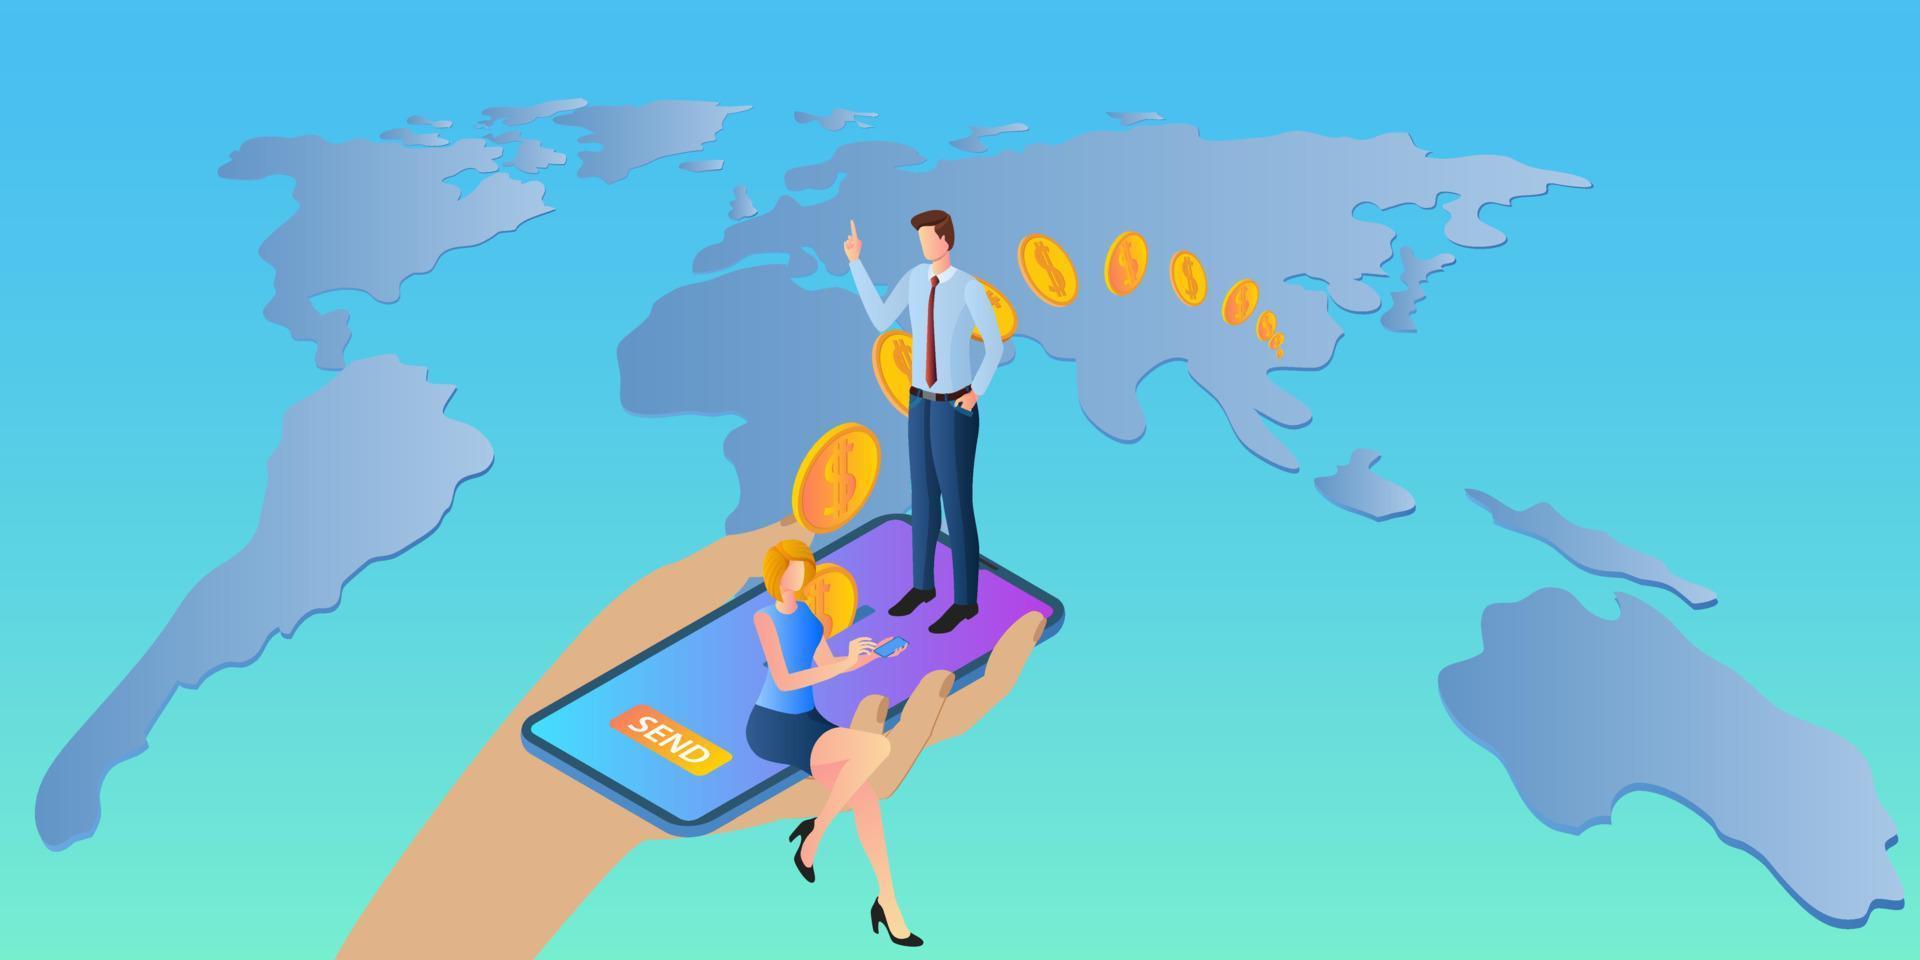 Online-Geldüberweisungen. Menschen verwenden ihre Smartphones, um Geld in die ganze Welt zu senden. hand und smartphone auf dem hintergrund einer großen karte der world.vector illustration. vektor